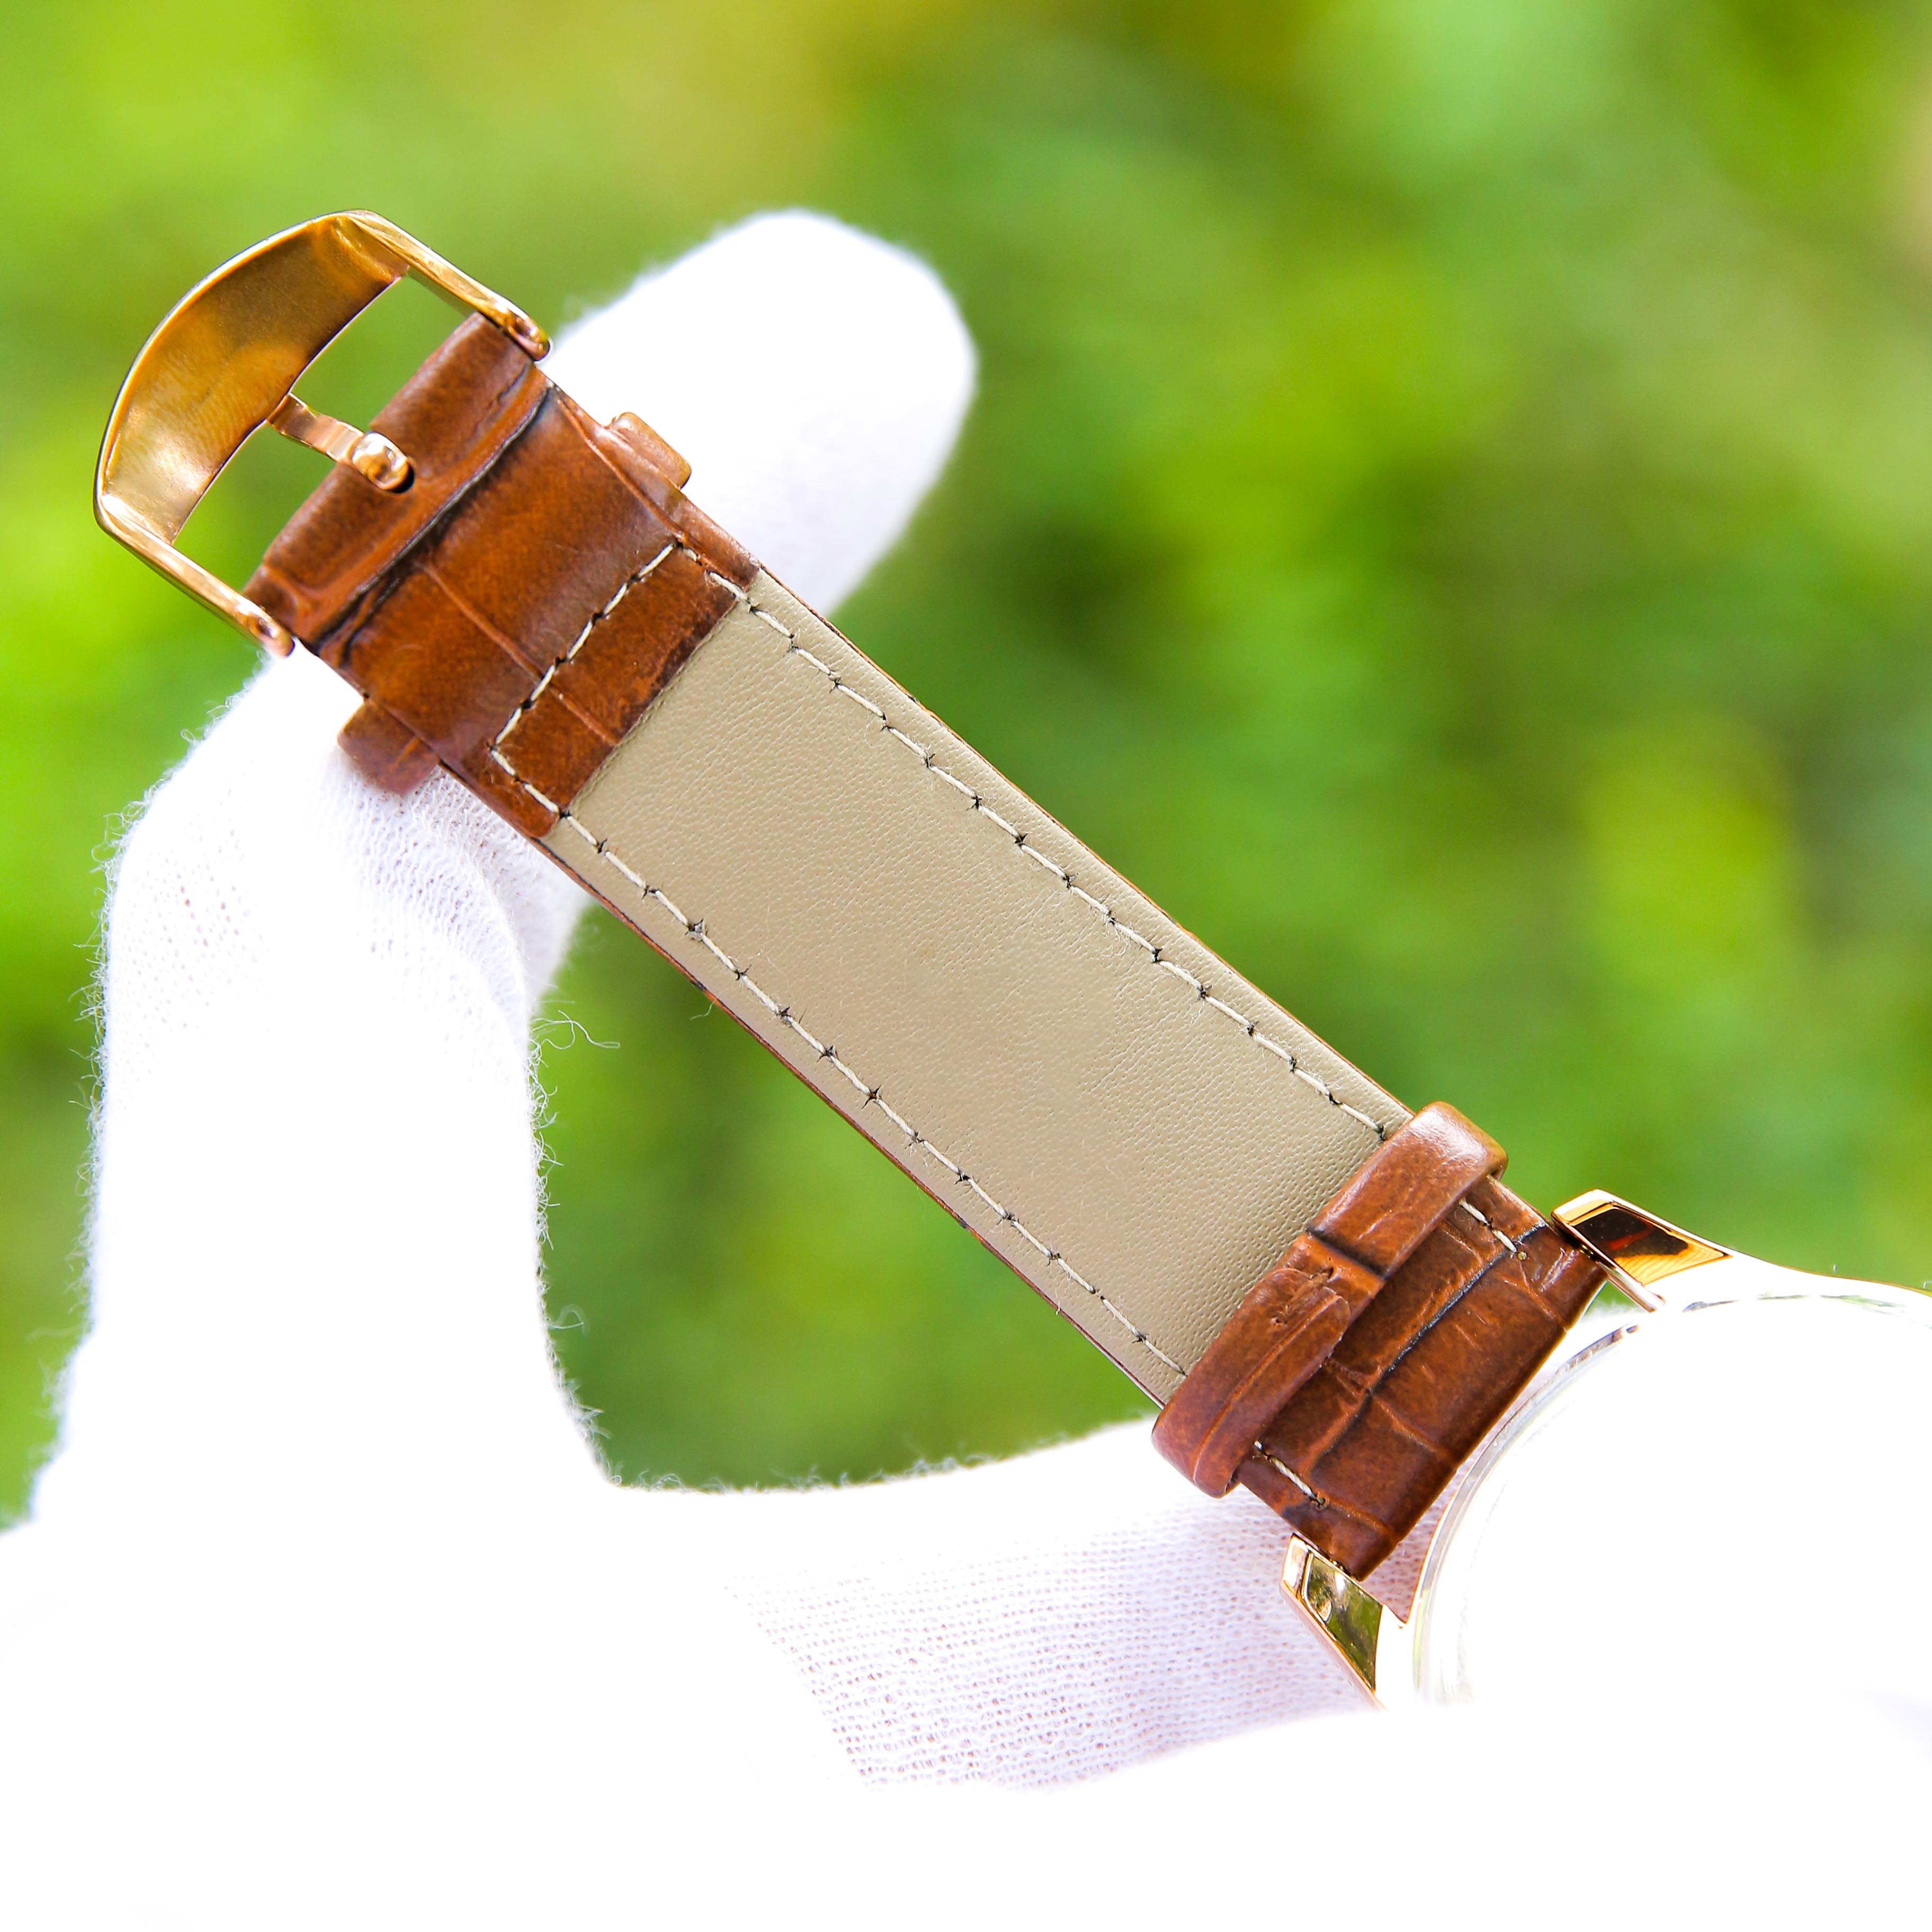 Đồng hồ nam dây da cao cấp – Thiết kế sang trọng, lịch lãm – Mặt kính cứng chống xước, chống nước hiệu quả - OM003207